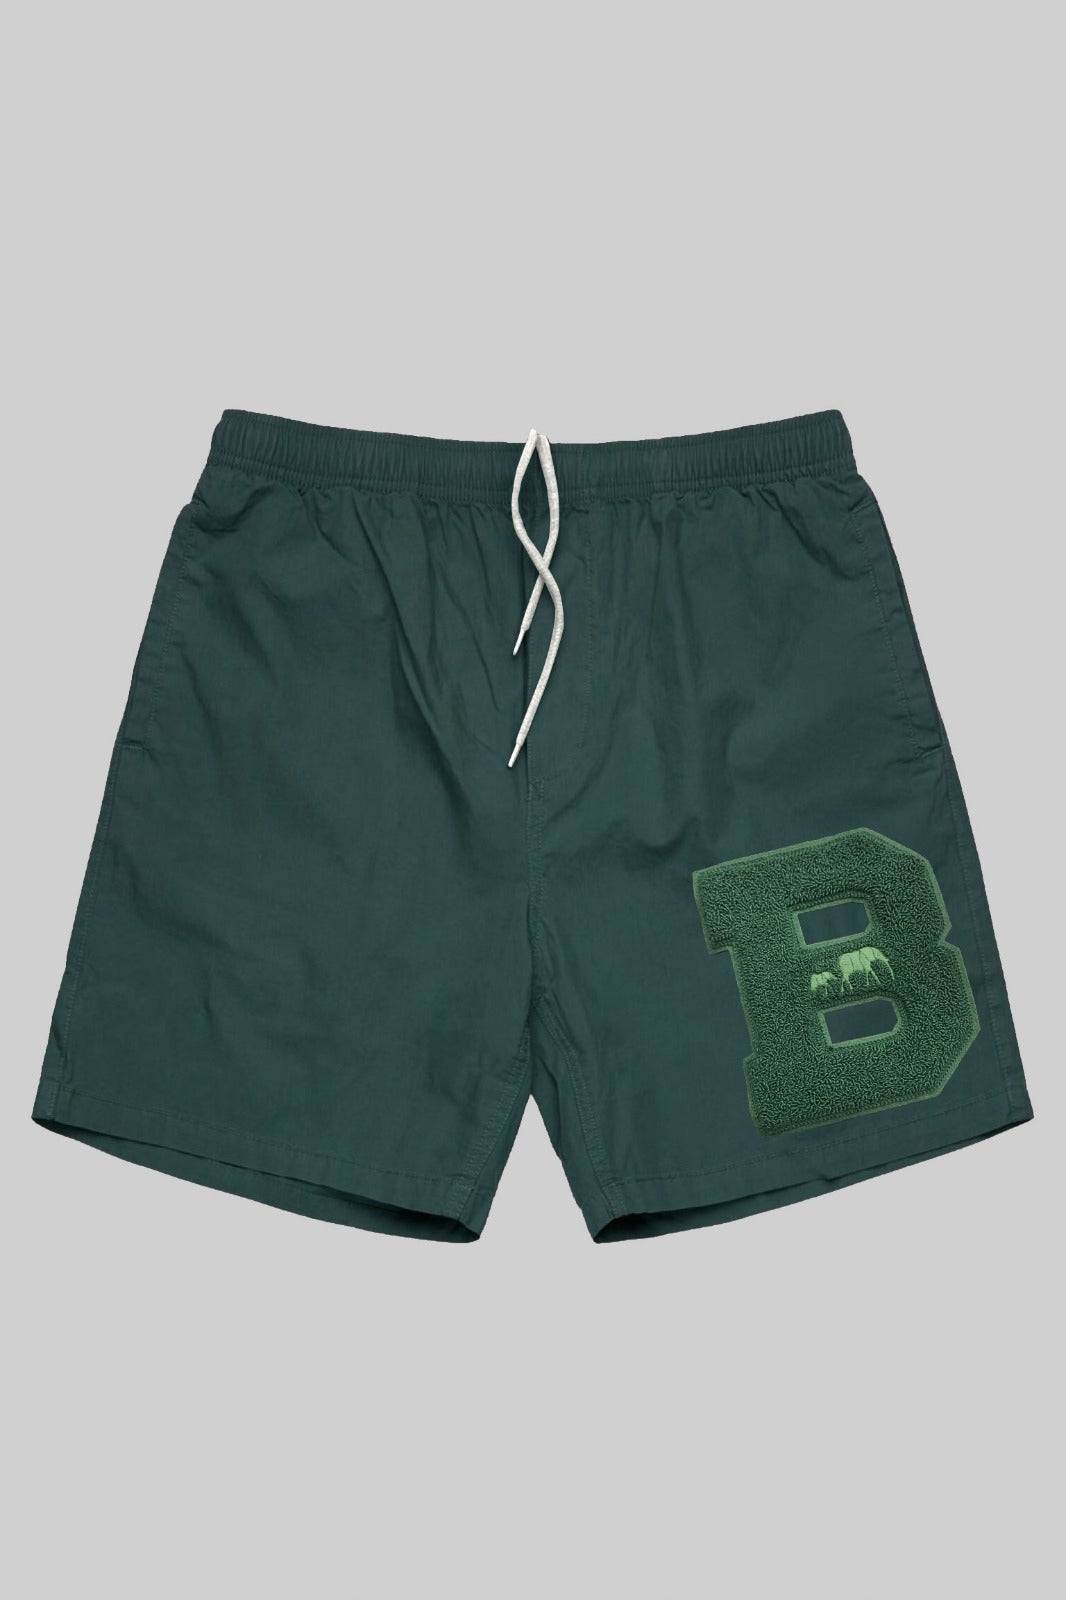 NEW Lenox Original Shorts (Green/Green)